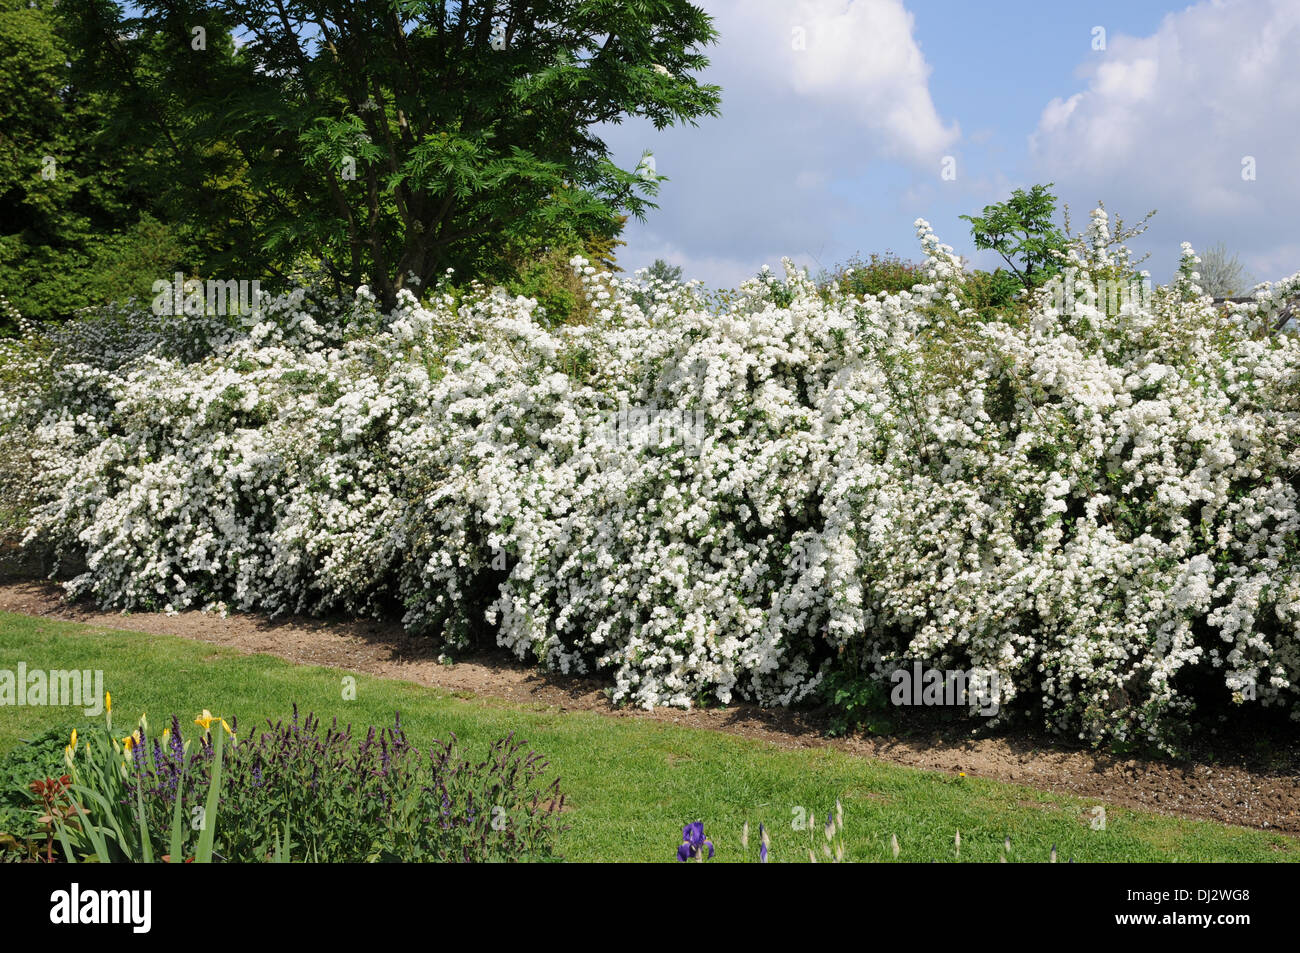 Spiraea, flowering hedge Stock Photo